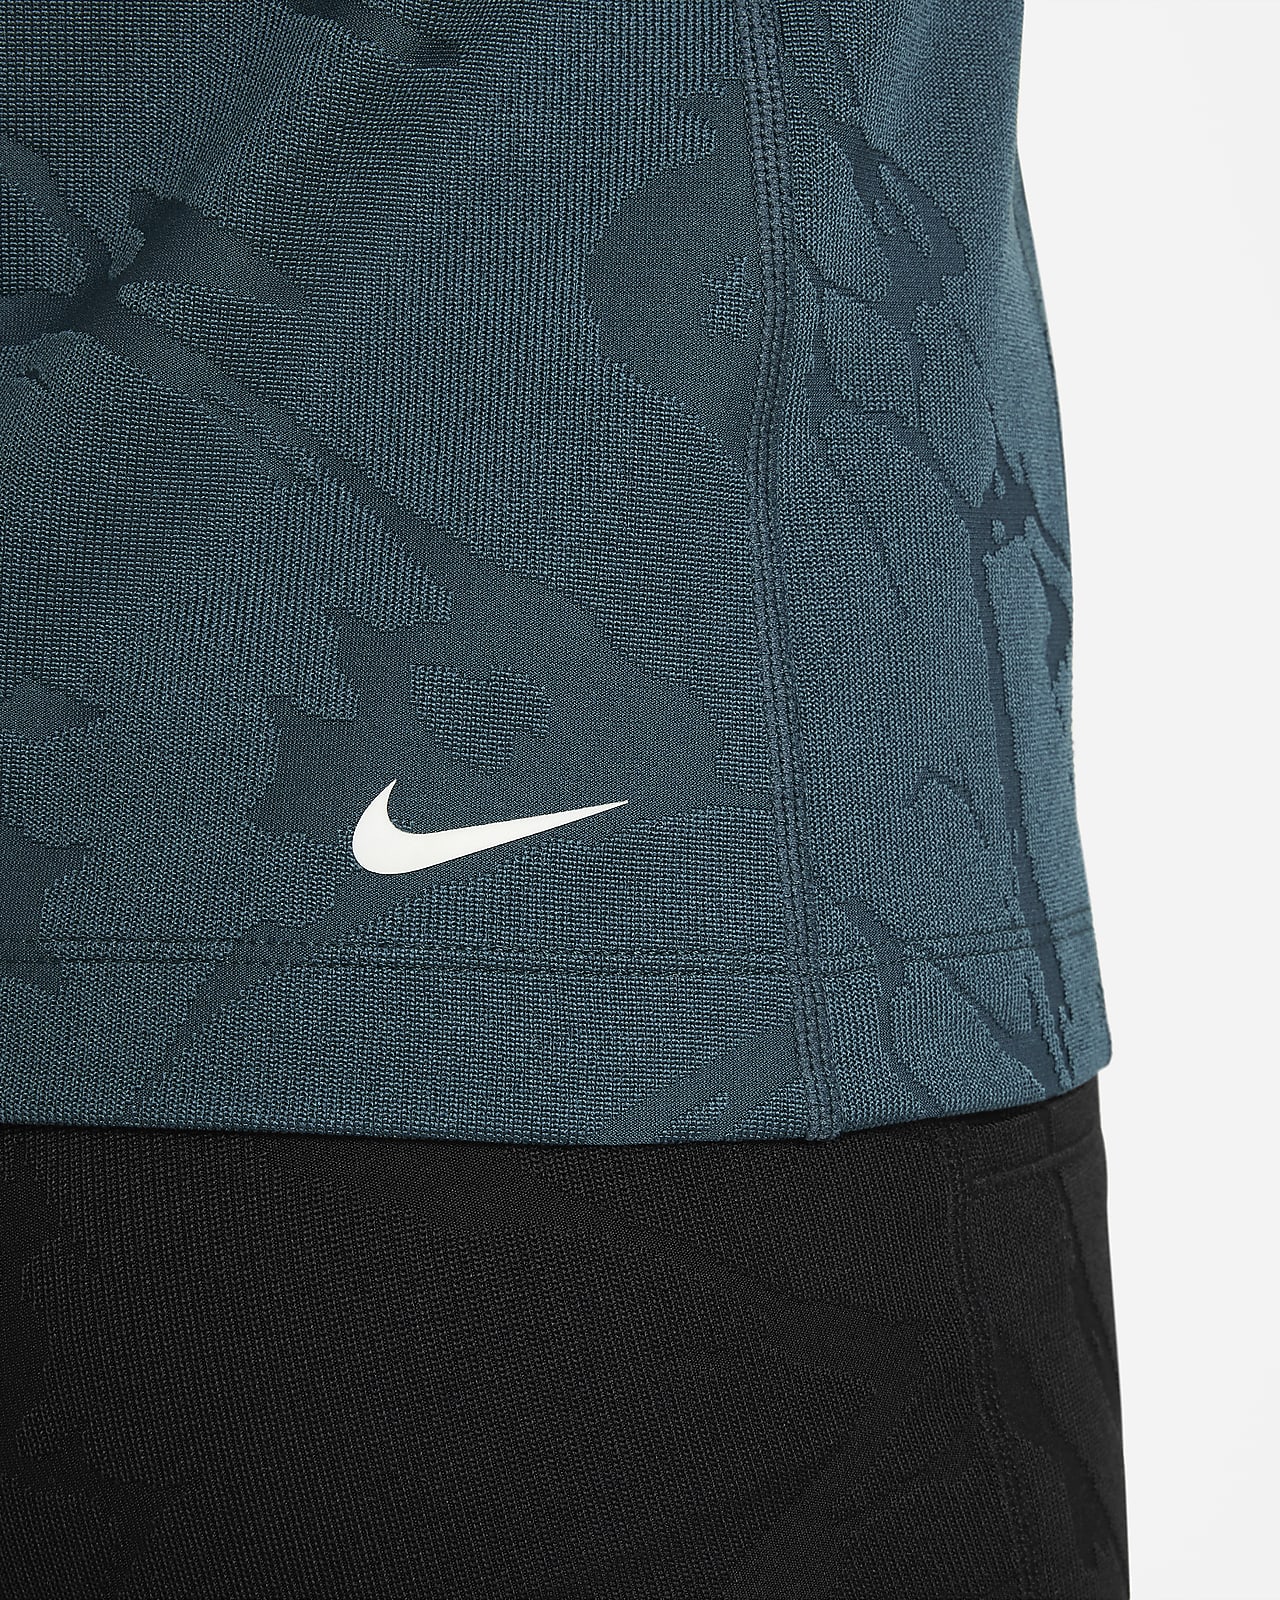 Nike ACG Therma-FIT Older Kids' (Girls') 1/4-Zip Long-Sleeve Top